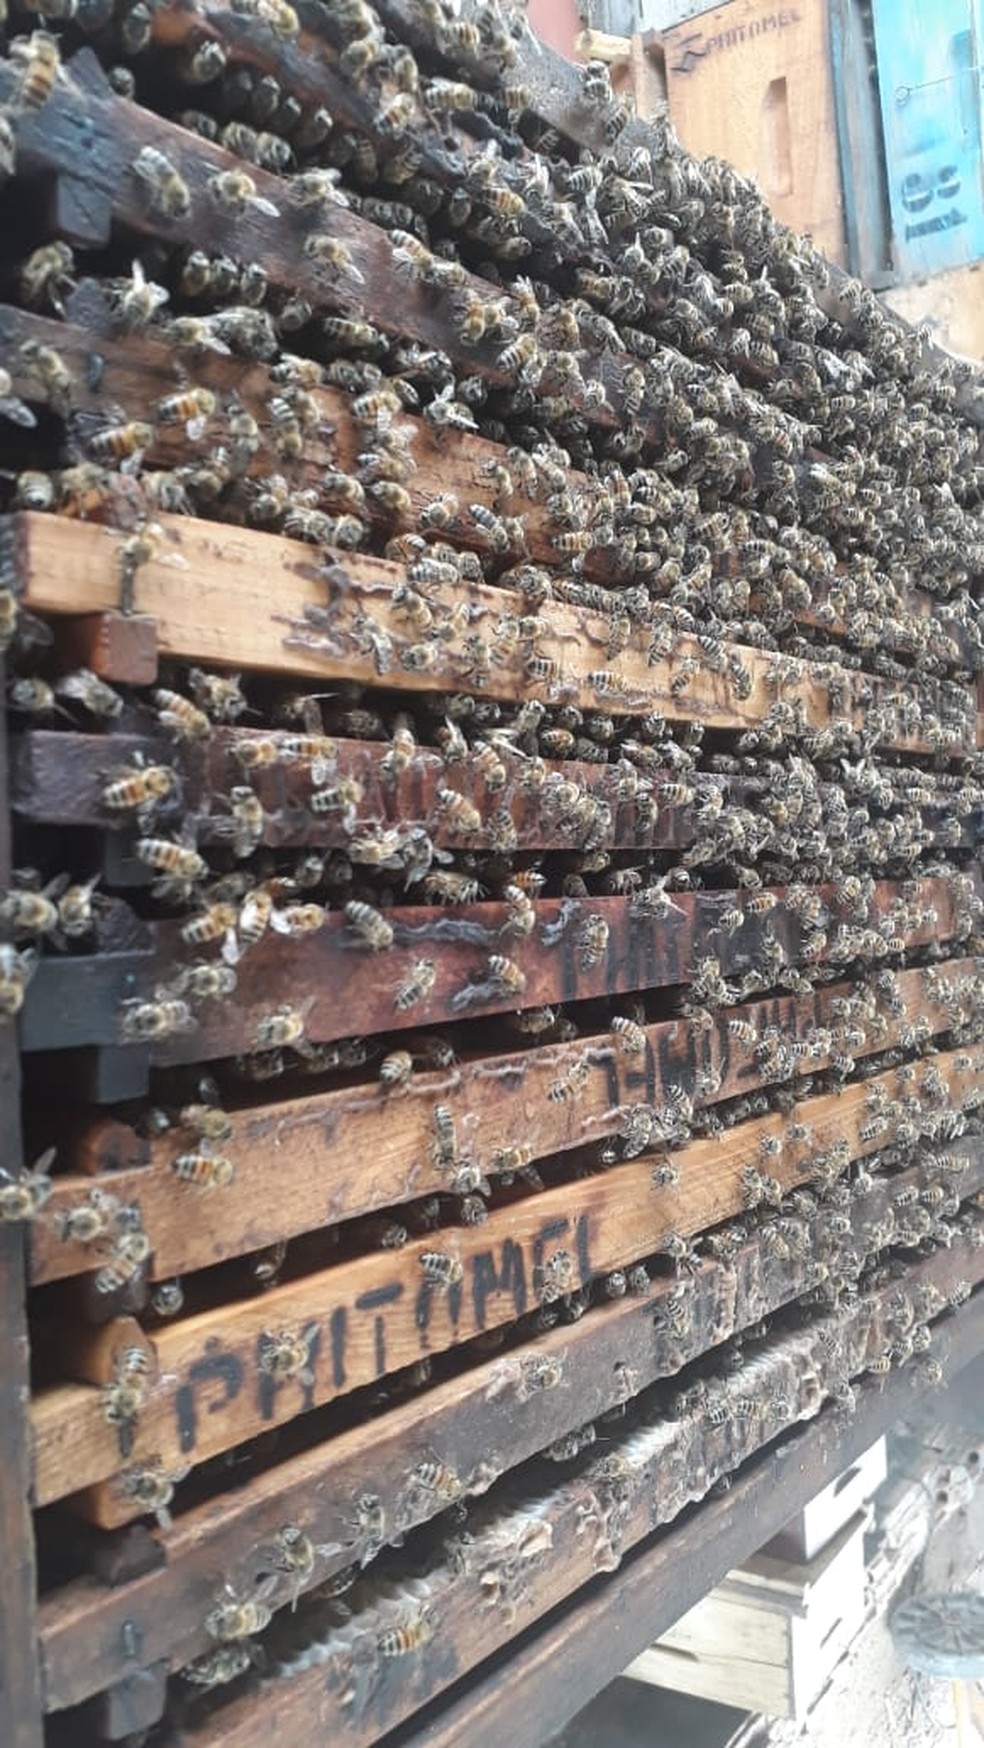 Apicultores registram aumento na produção de mel na pandemia — Foto: Cedida/Lucas Cremonezi